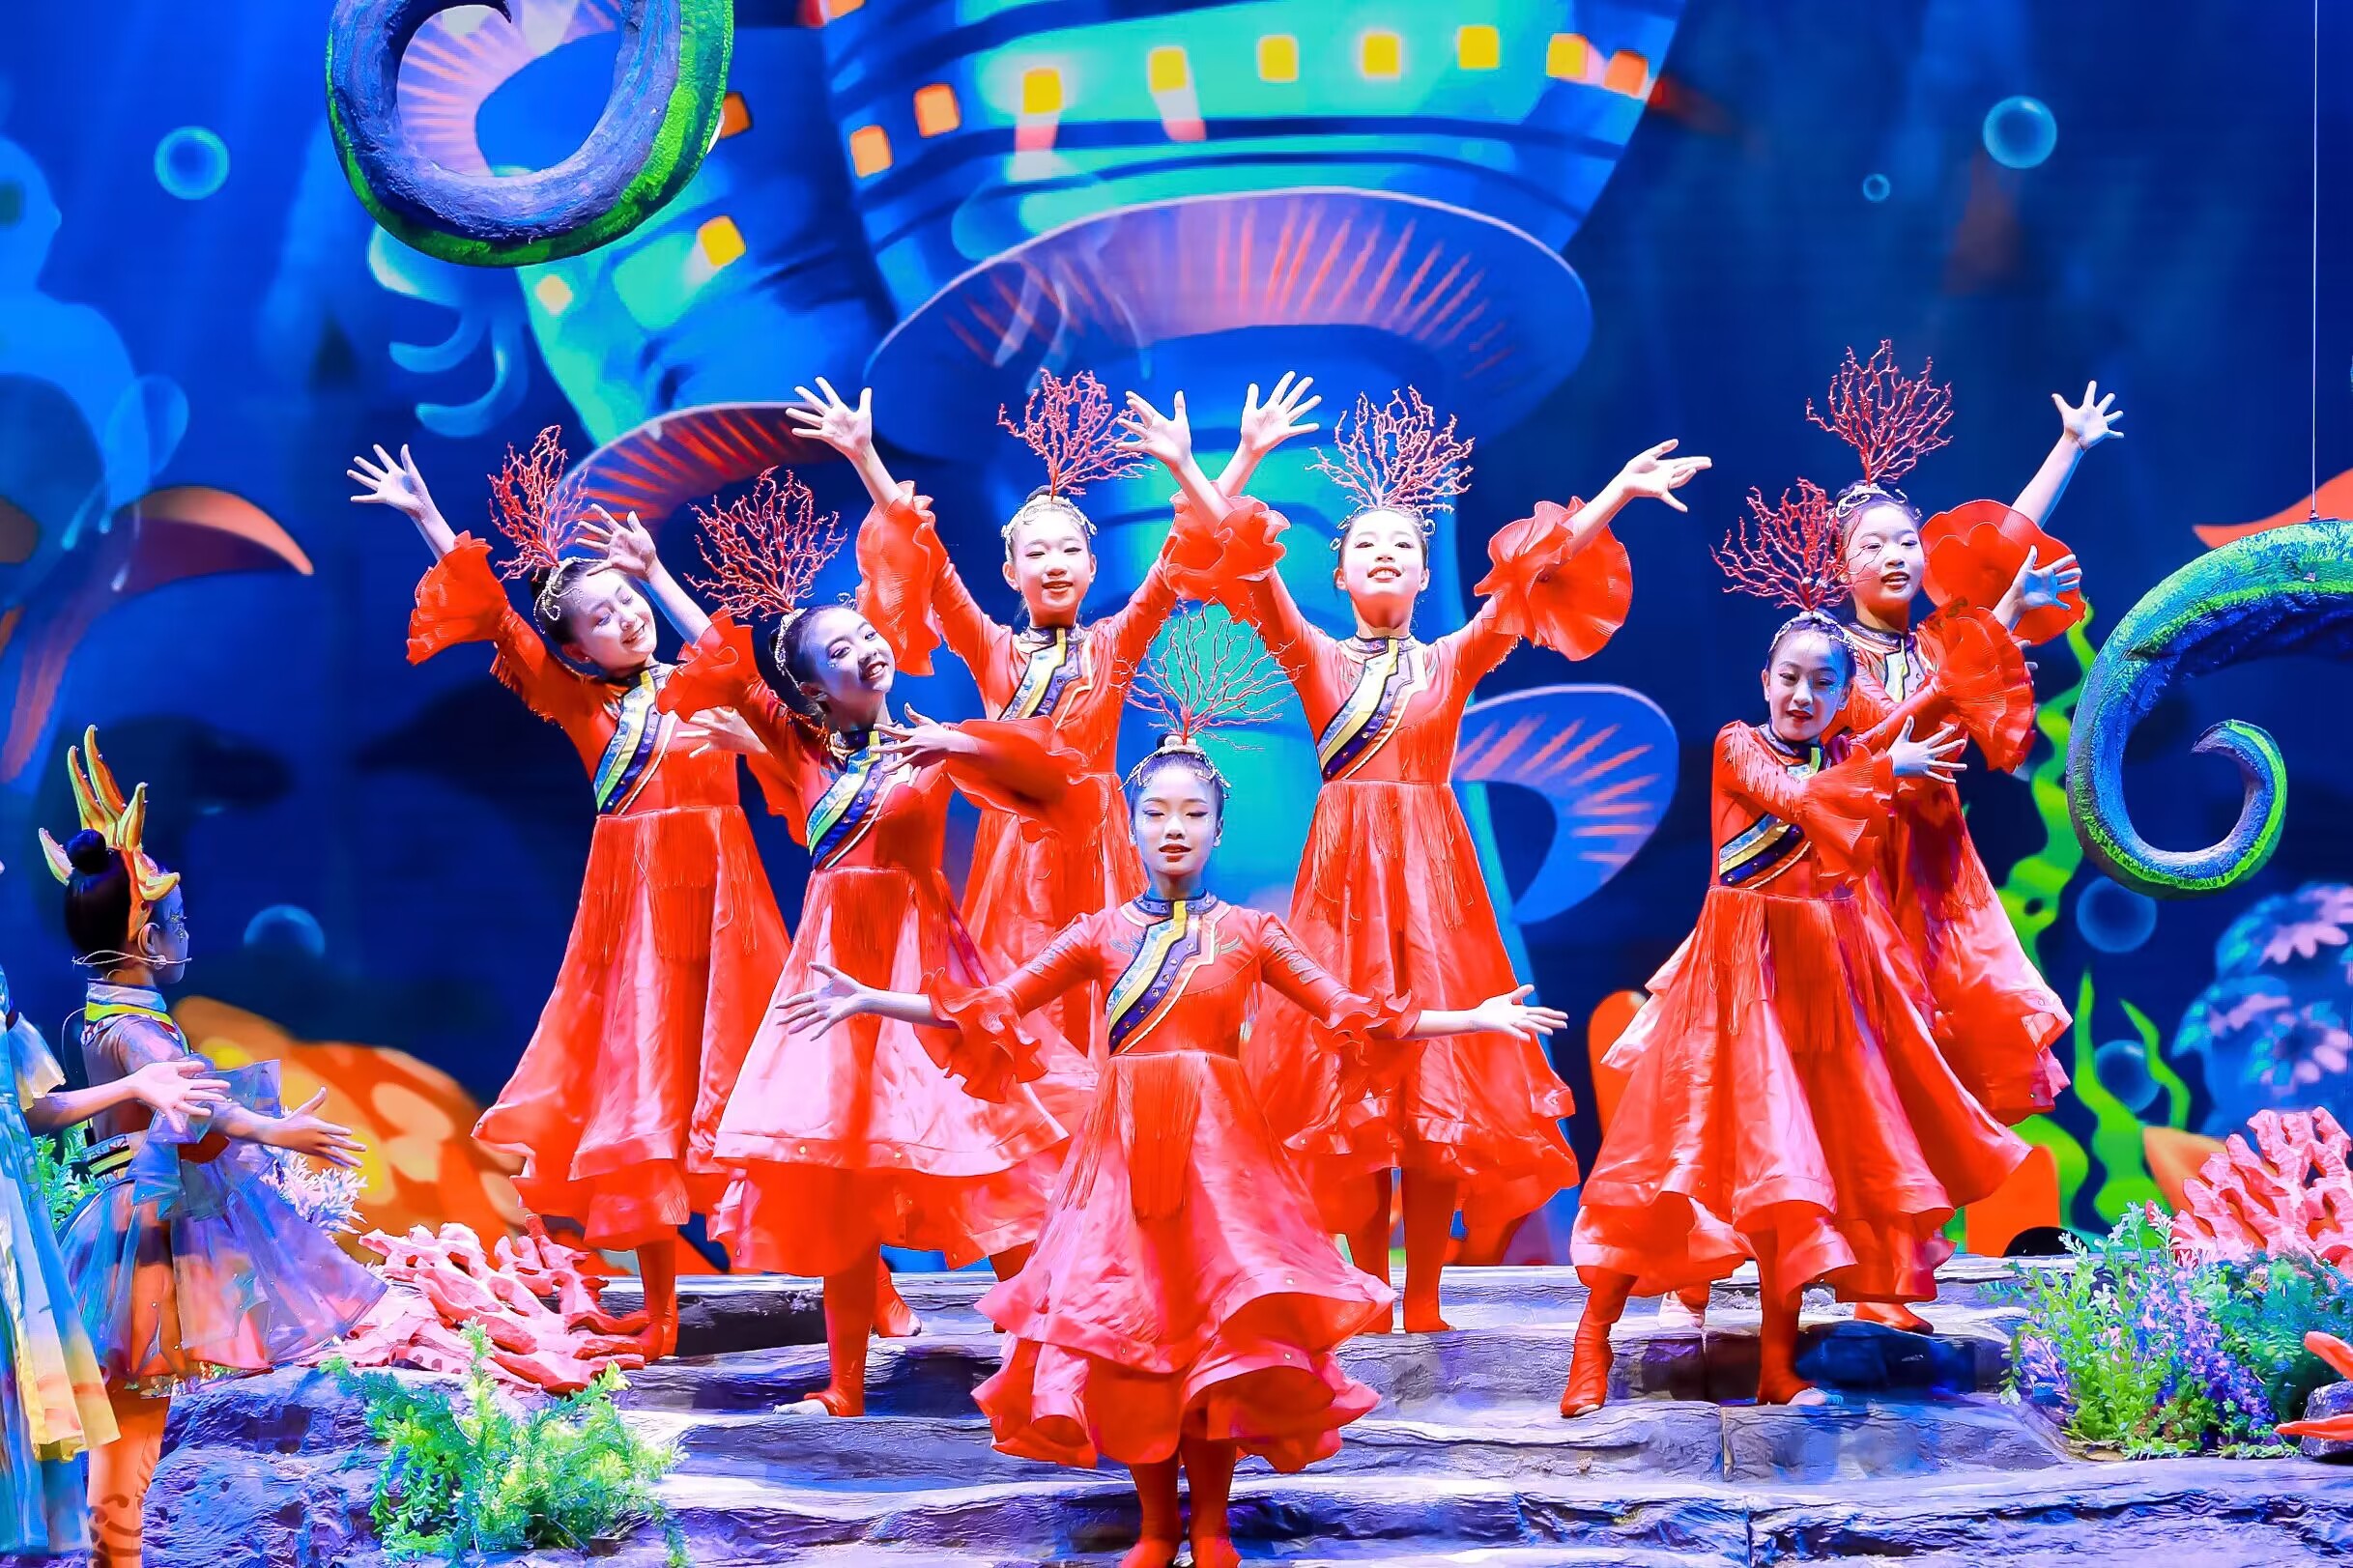 大型原创非遗活化儿童歌舞剧《望天湖的传说》,深港澳台儿童同台出演